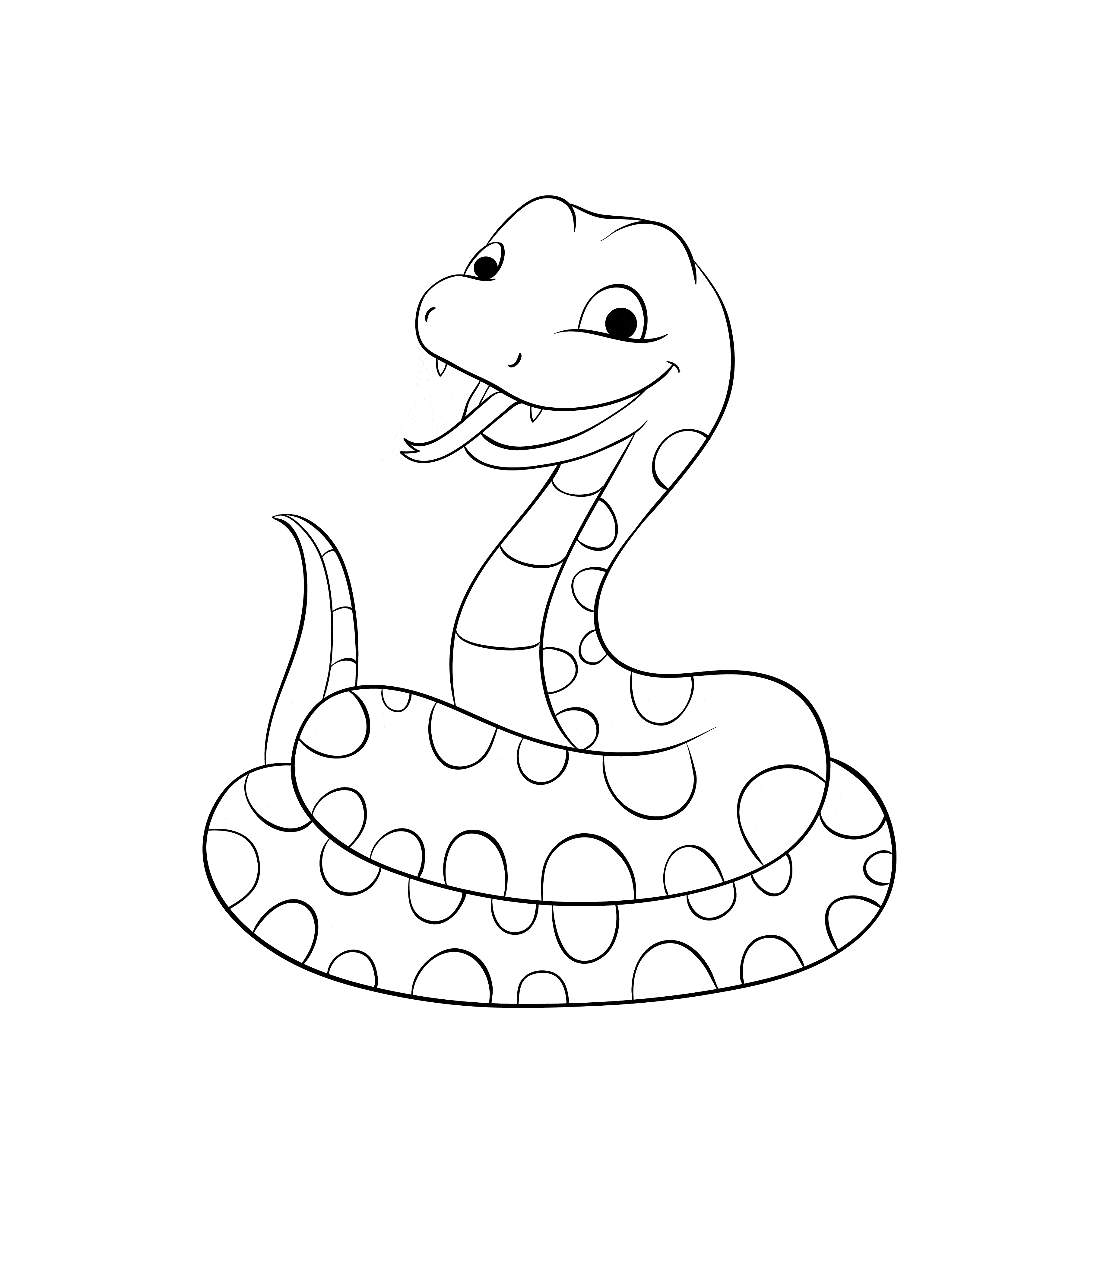 Hướng dẫn cách vẽ con rắn đơn giản với 7 bước cơ bản